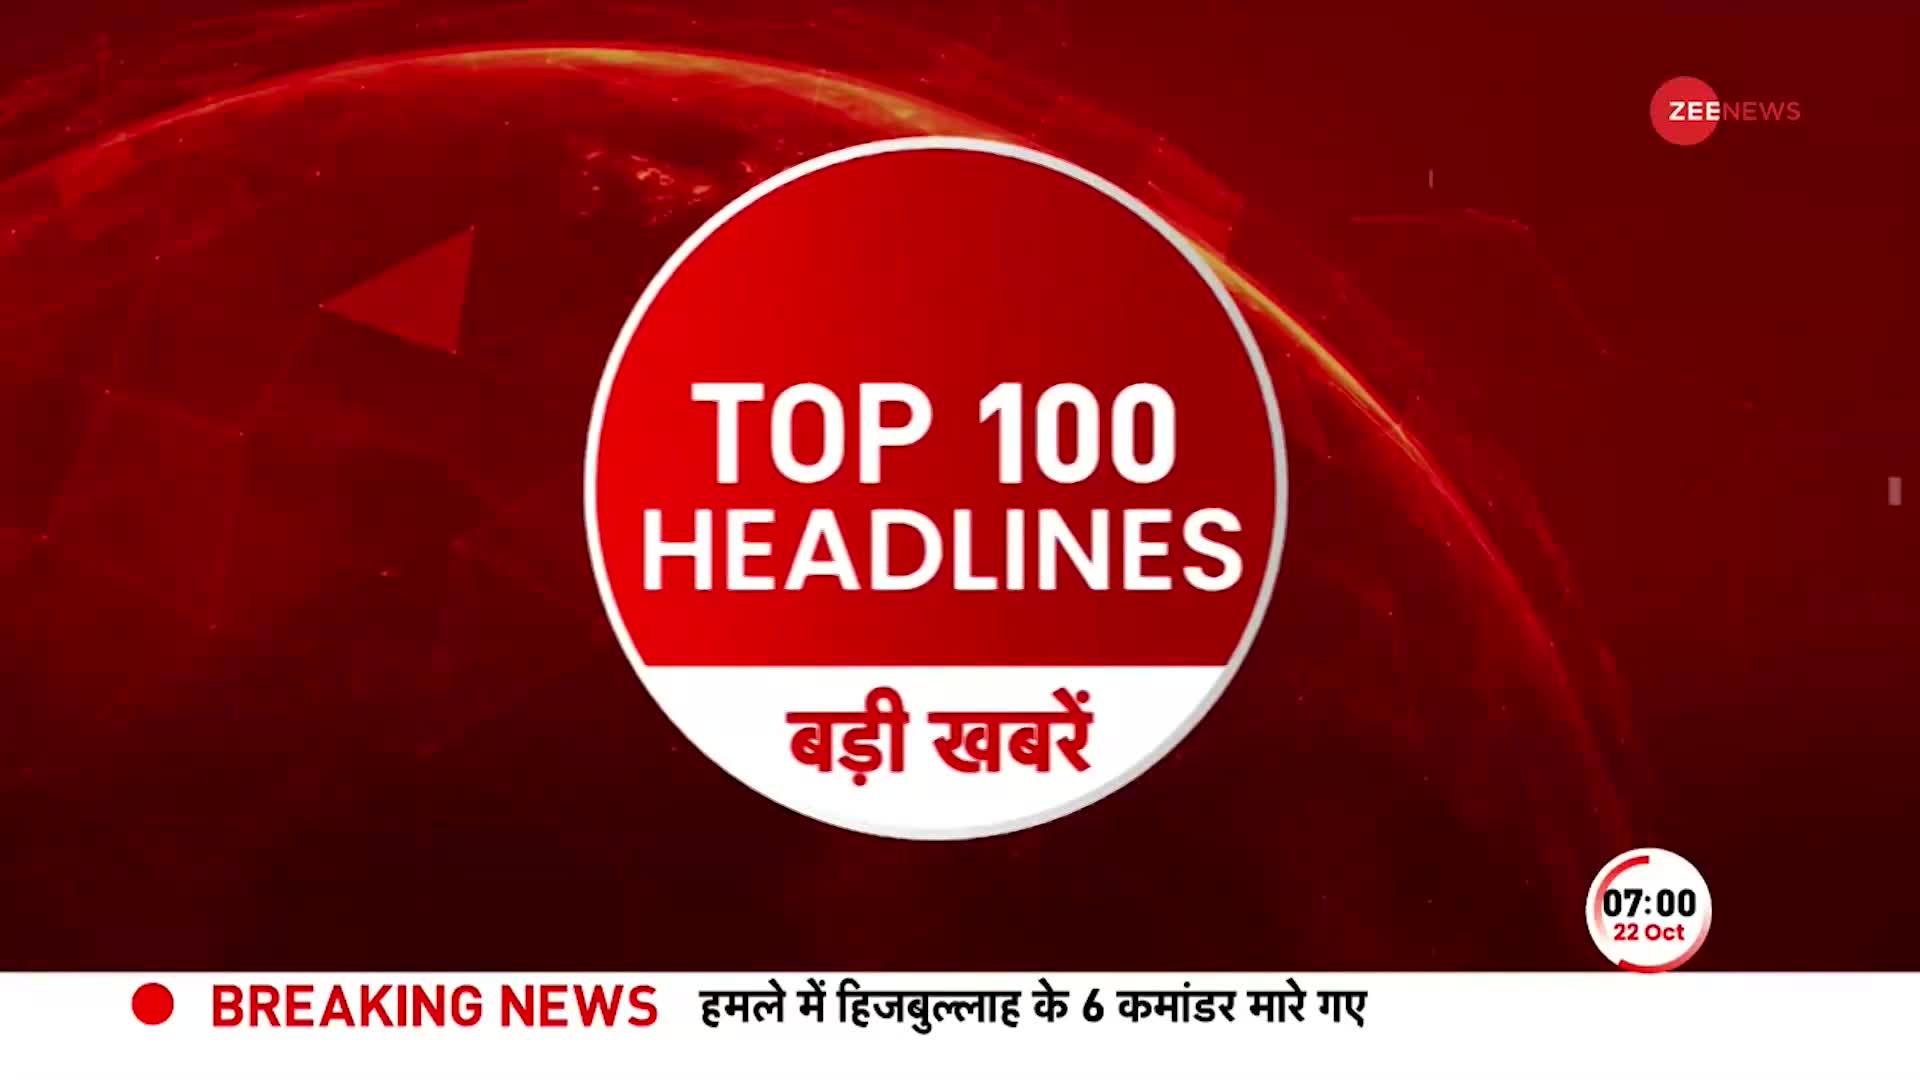 Top 100 News: अभी-अभी की बड़ी खबरें फटाफट अंदाज में